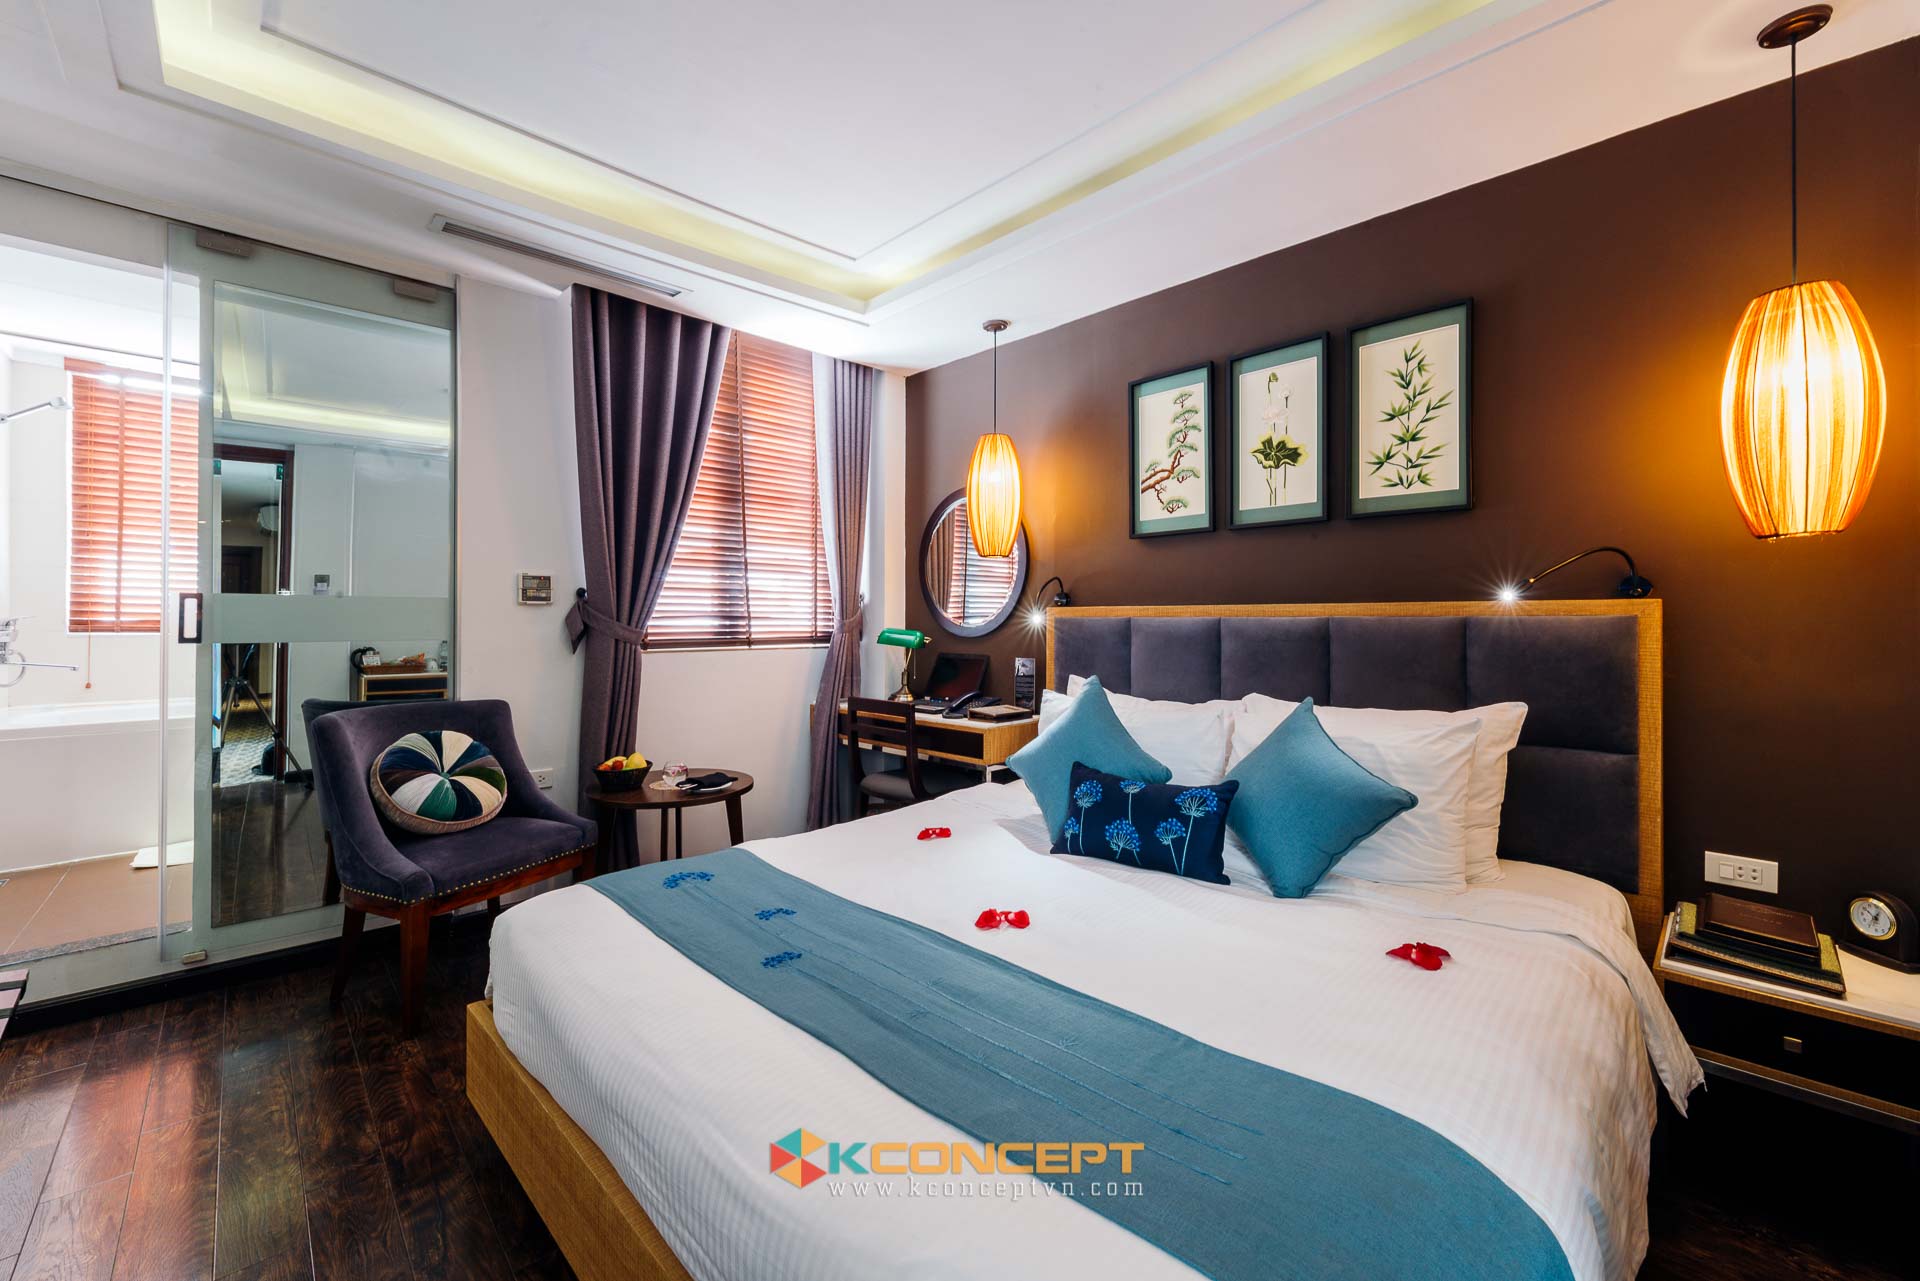 Hình ảnh hoàn thiện trong dự án chụp ảnh khách sạn Essence Palace Hotel Spa tại 27 Gia Ngư Hà Nội